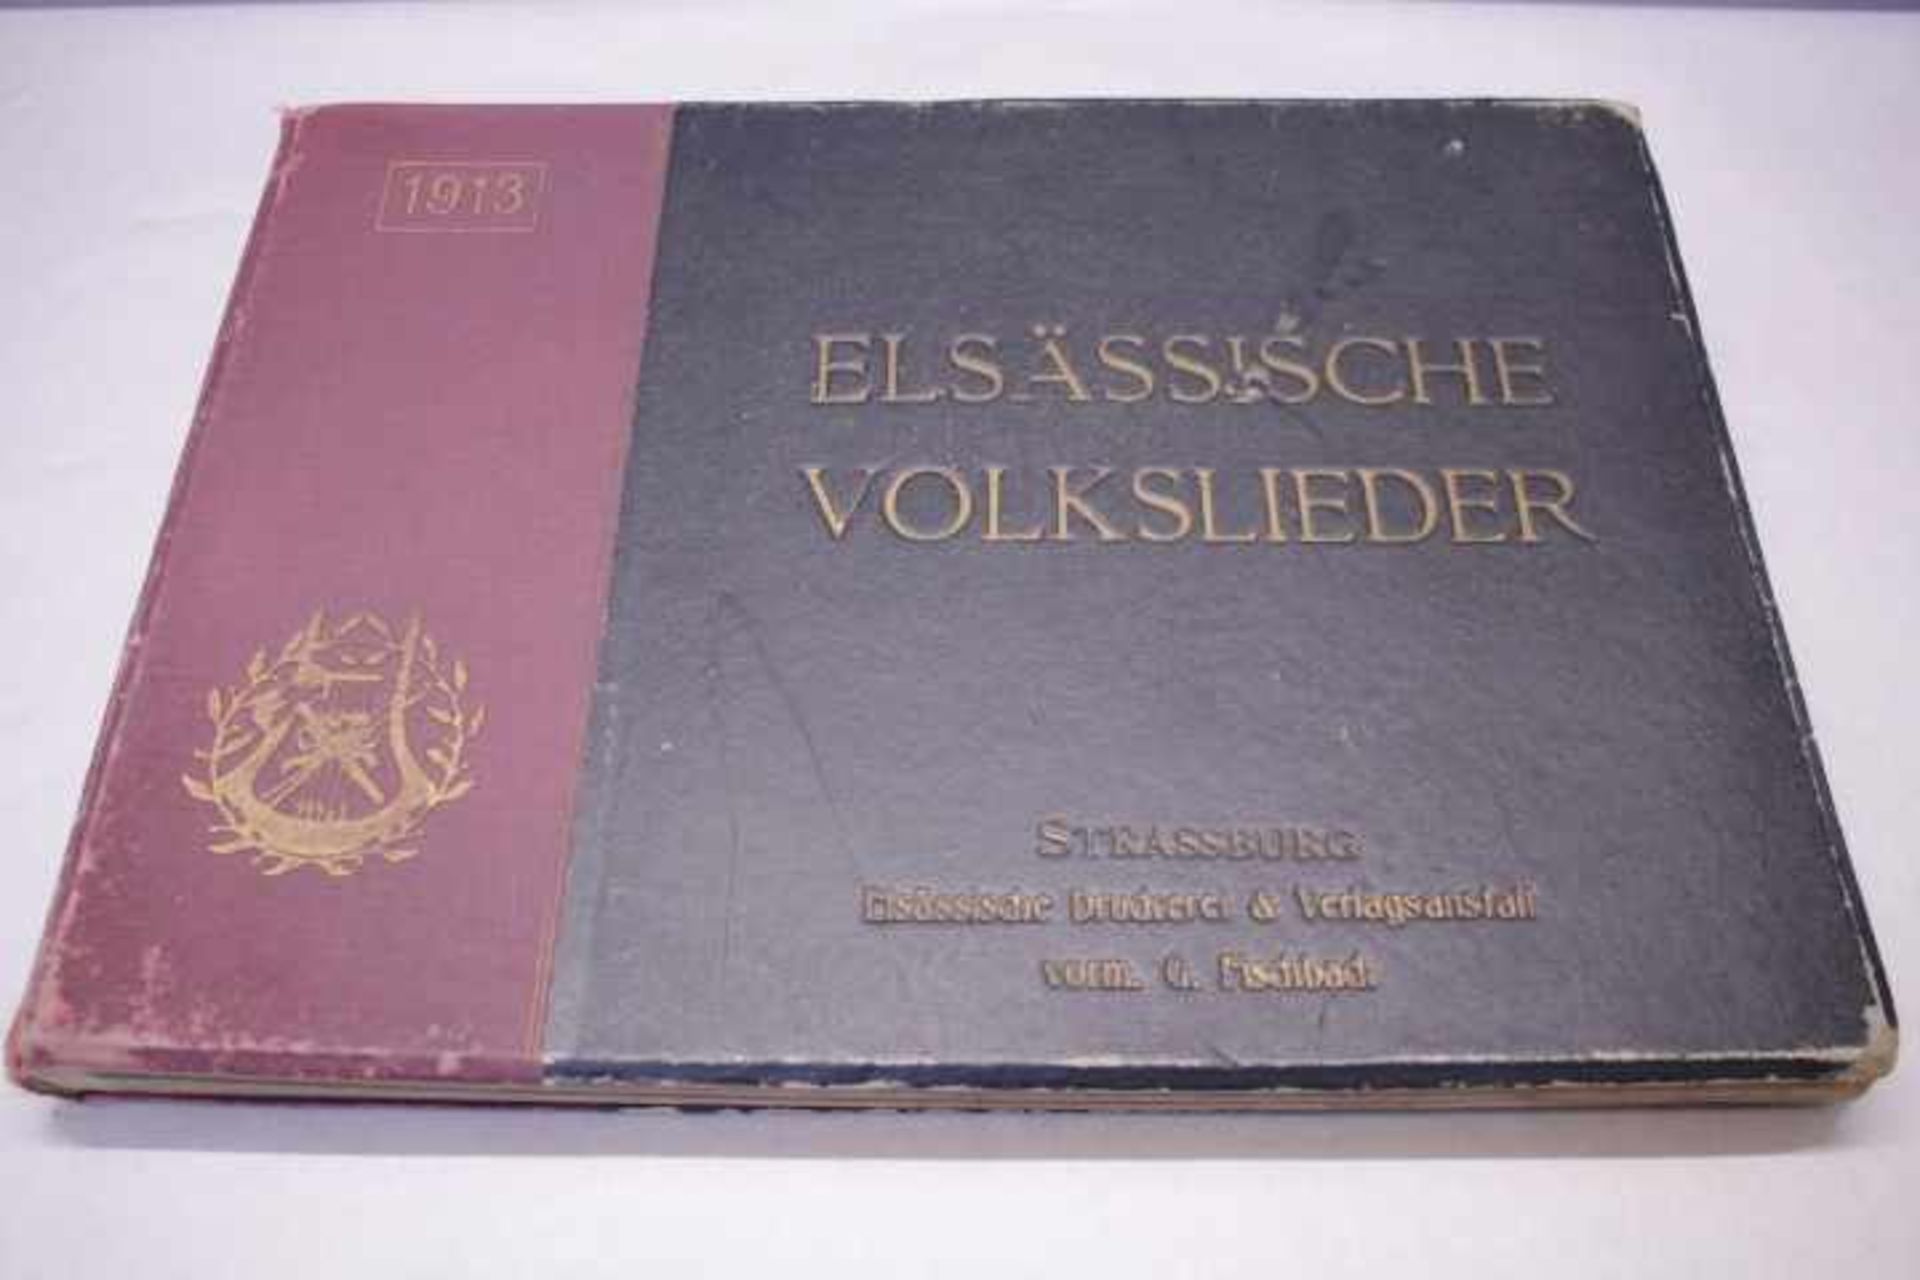 Elsässische Volkslieder 1913Druckerei & Verlagsanstaltvorm. G. Fischbach,Strassburg,,